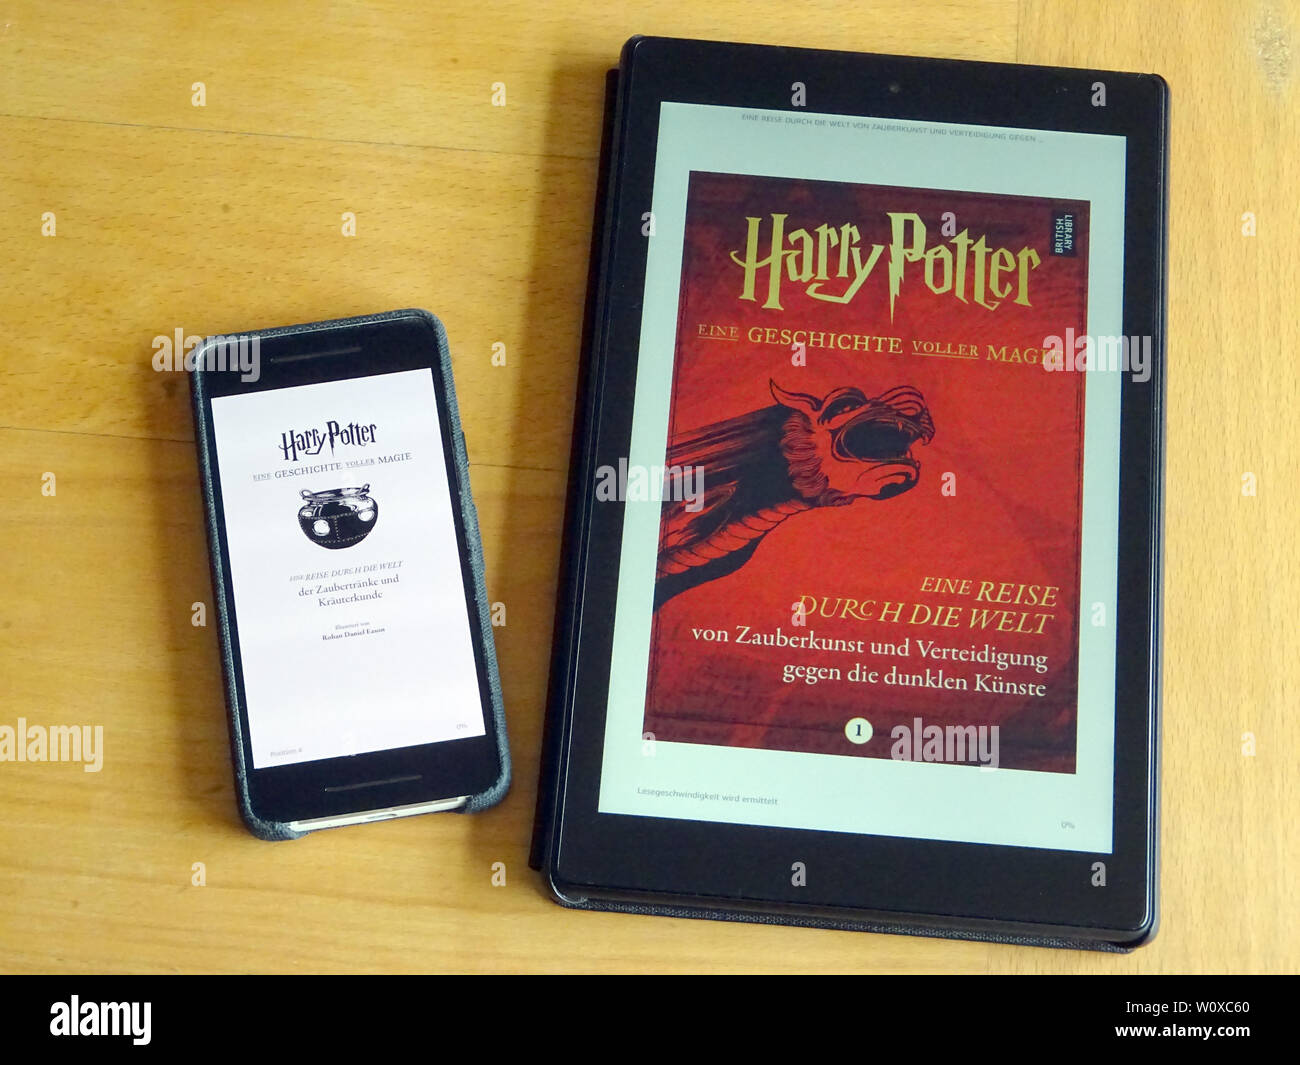 Londres, Royaume-Uni. 28 Juin, 2019. L'eBook collection "une histoire  pleine de magie" peut être vu sur l'affiche d'un smartphone et tablette. De  nouvelles aventures de l'assistant populaires ne sont plus à prévoir,